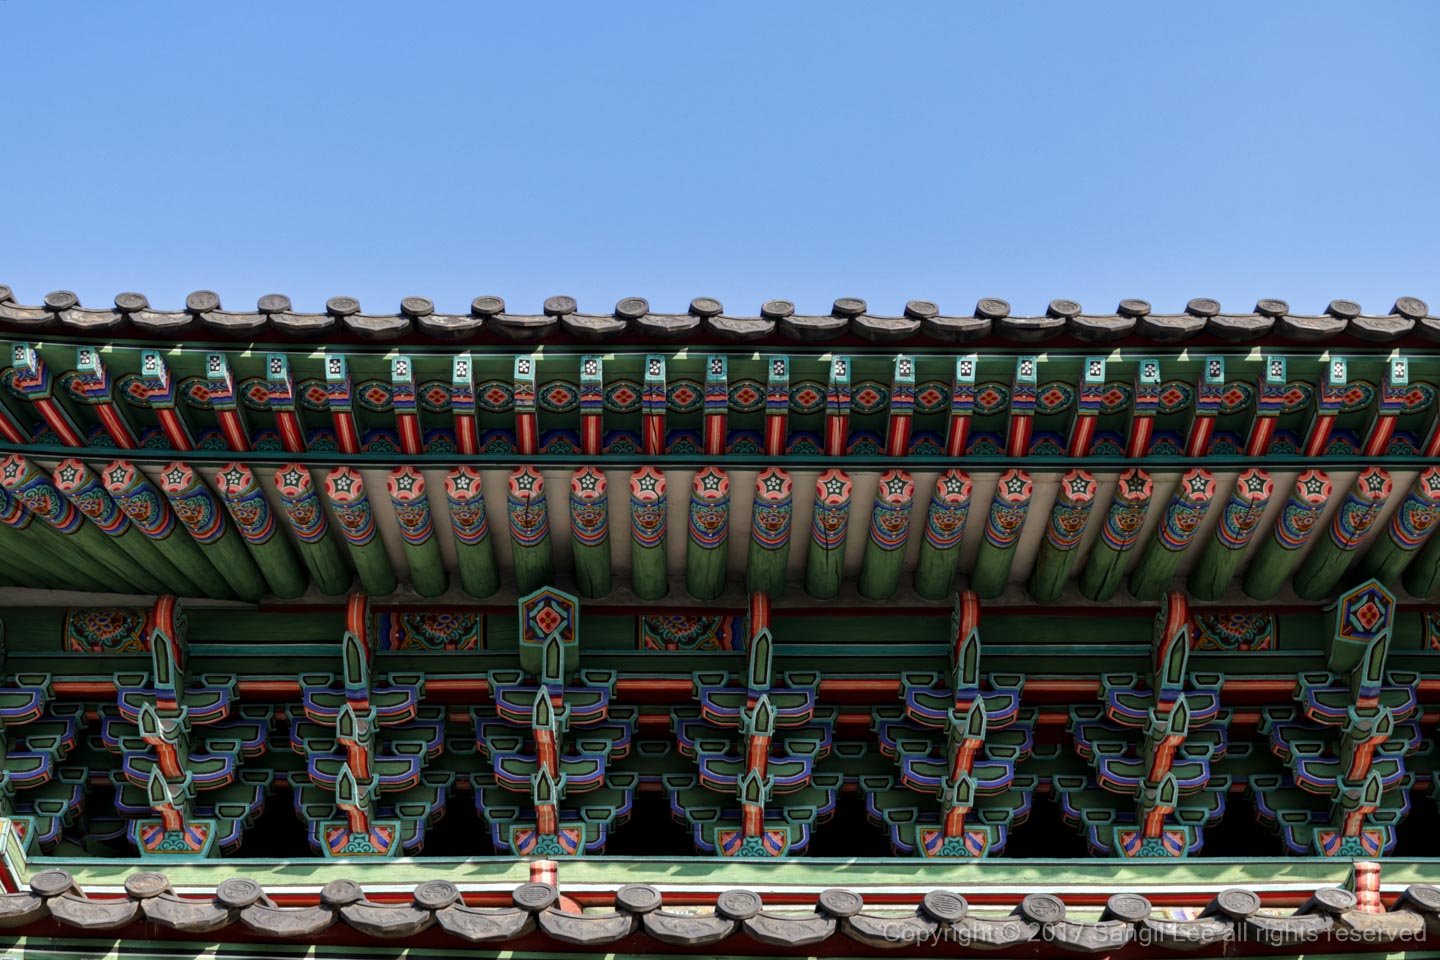 Changgeonggung palace at Seoul